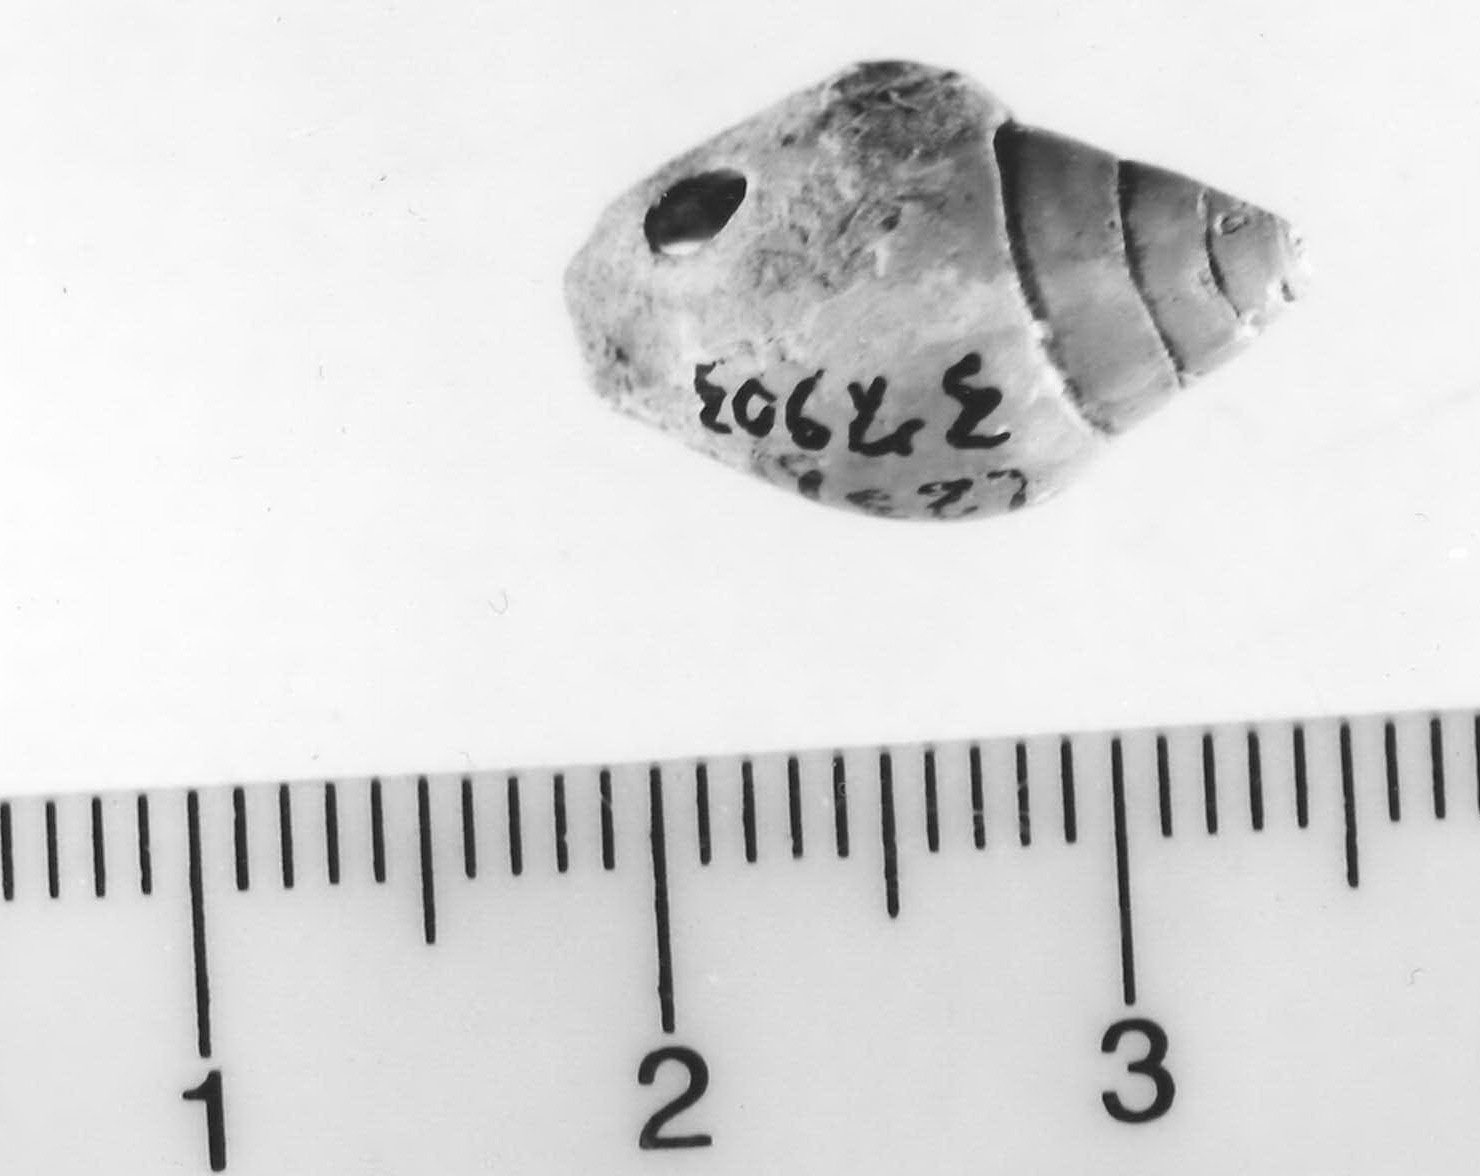 conchiglia forata - Piceno III (sec. VII a.C)